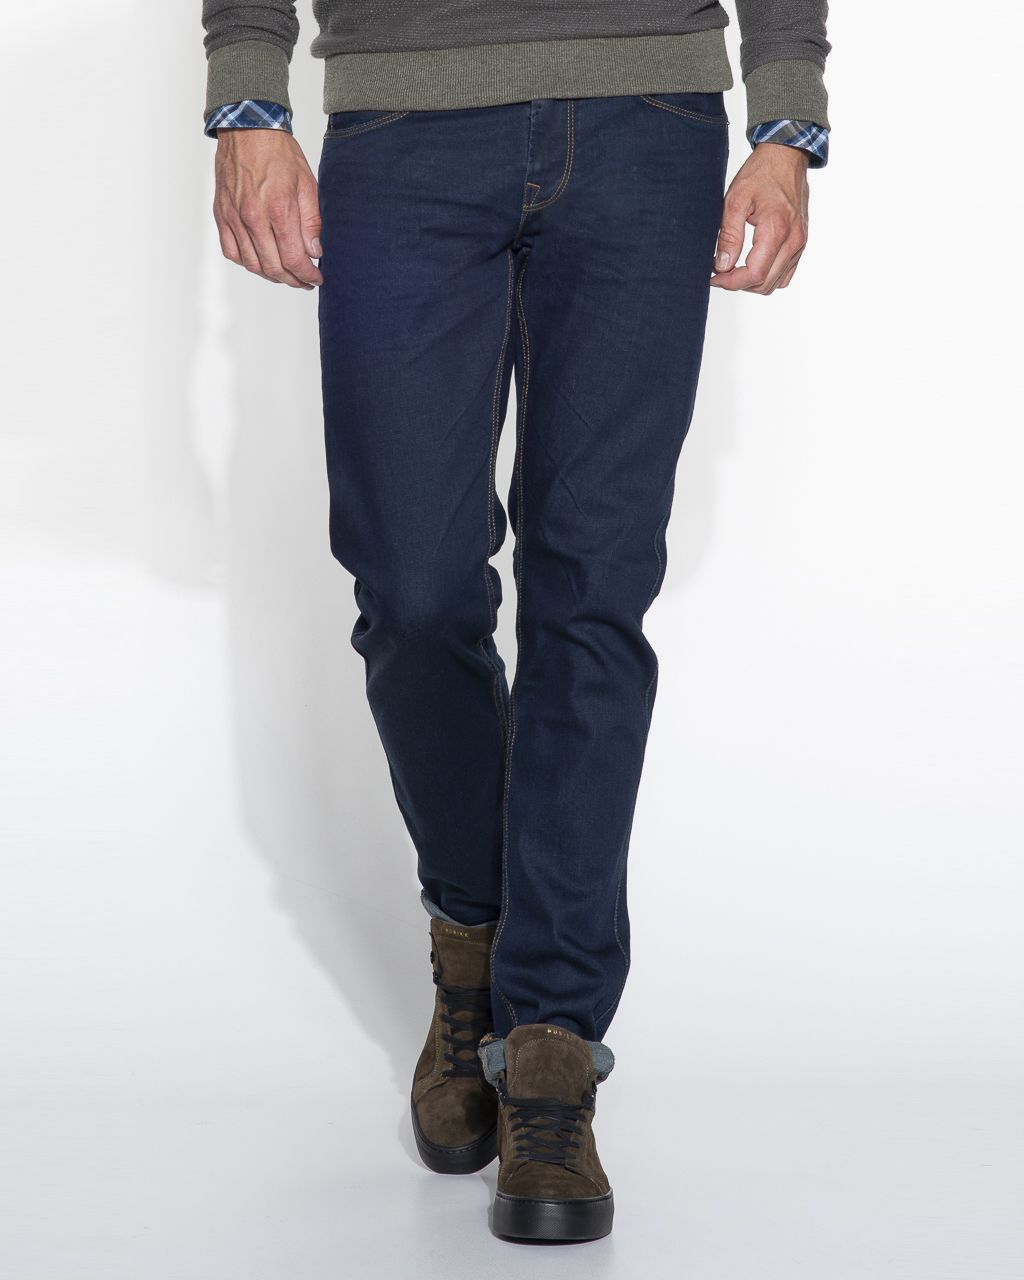 PME Legend Nightflight Jeans Donker blauw 031936-31-28/30